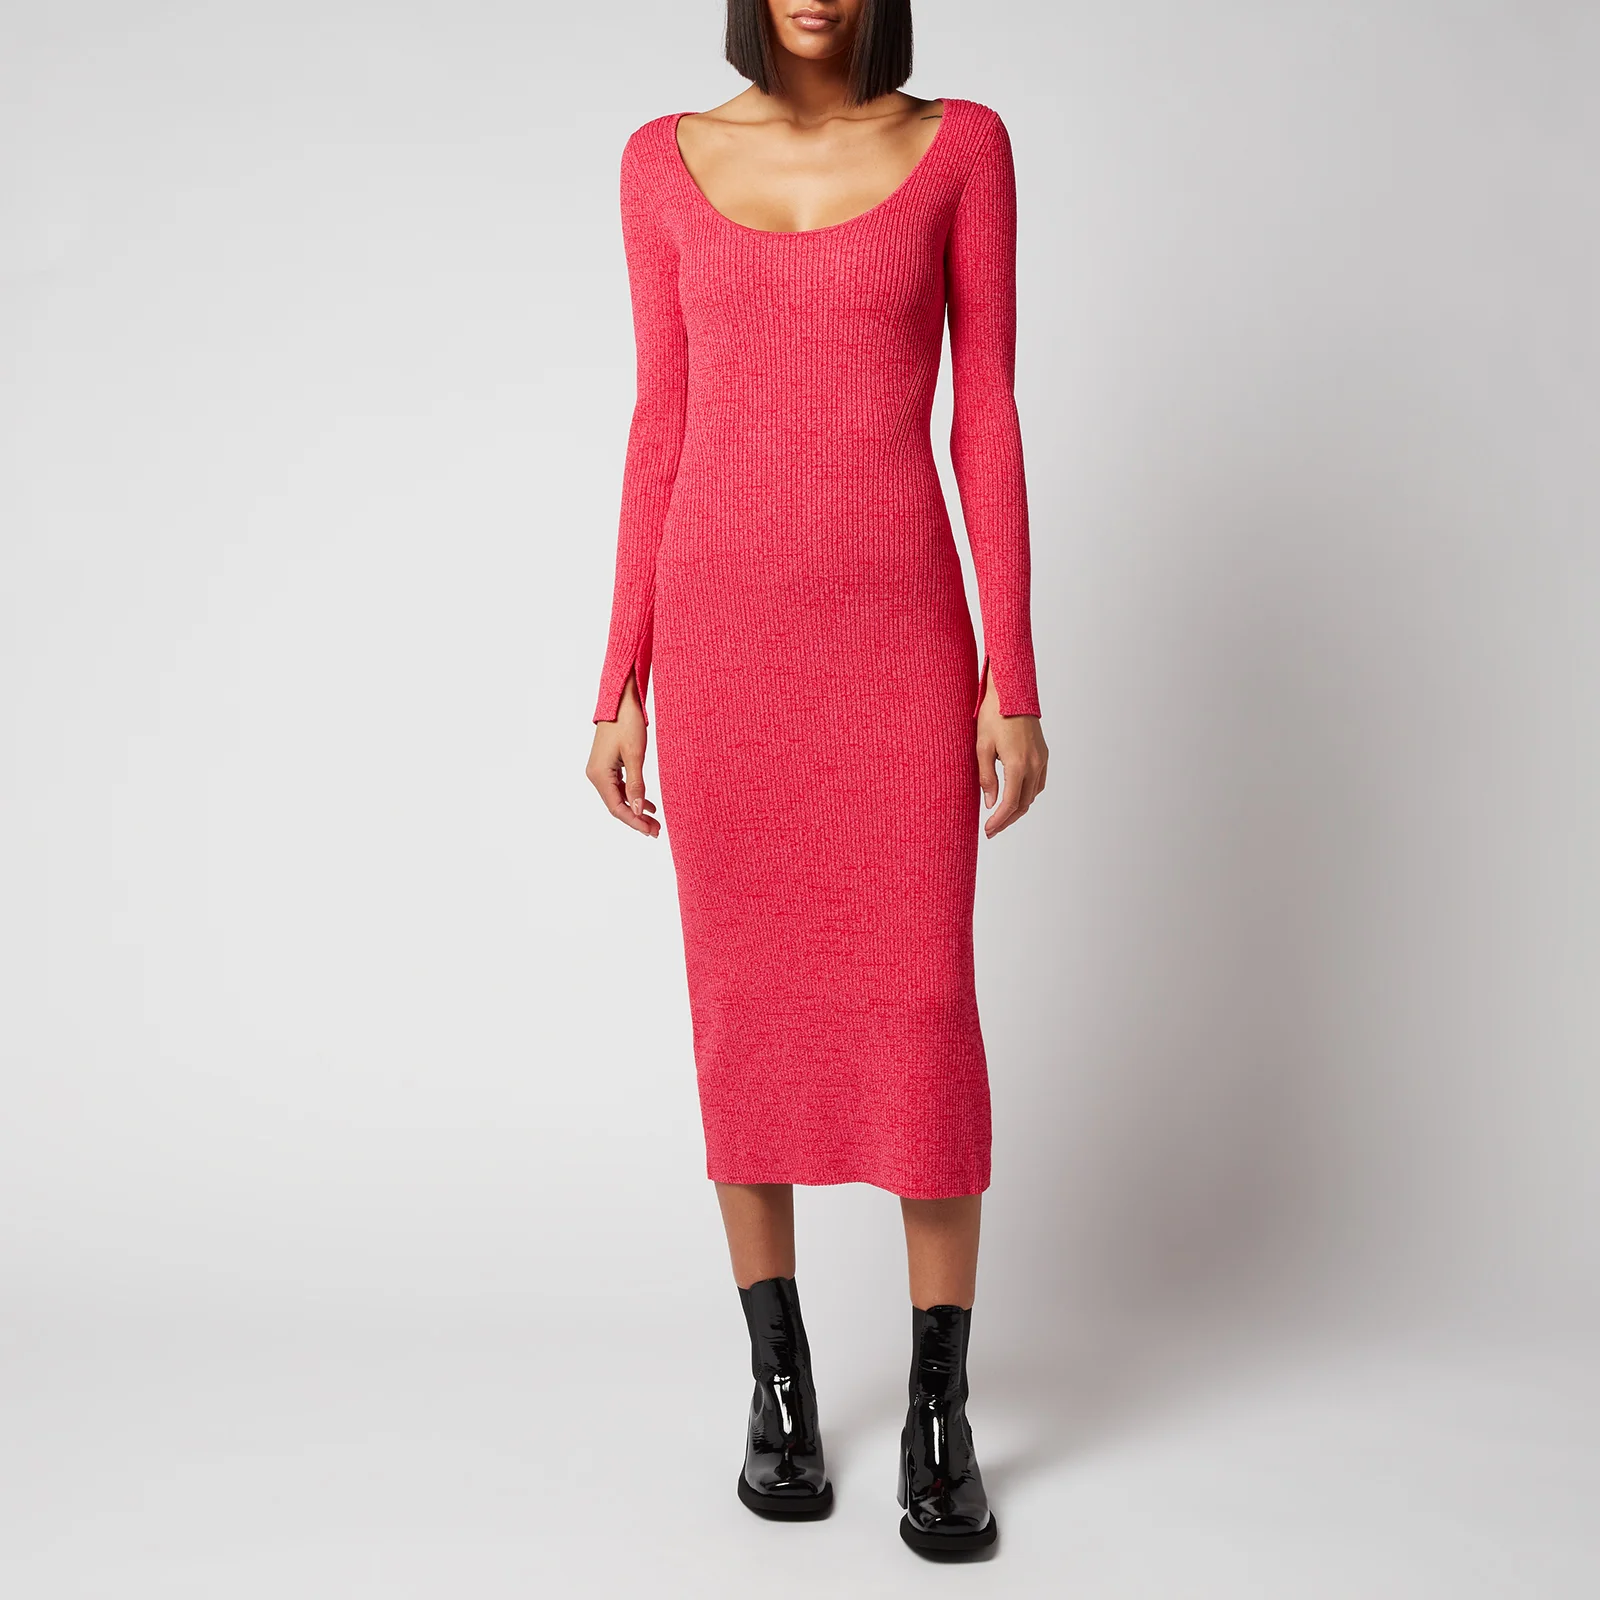 Ganni Women's Melange Knit Dress - High Risk Red Image 1